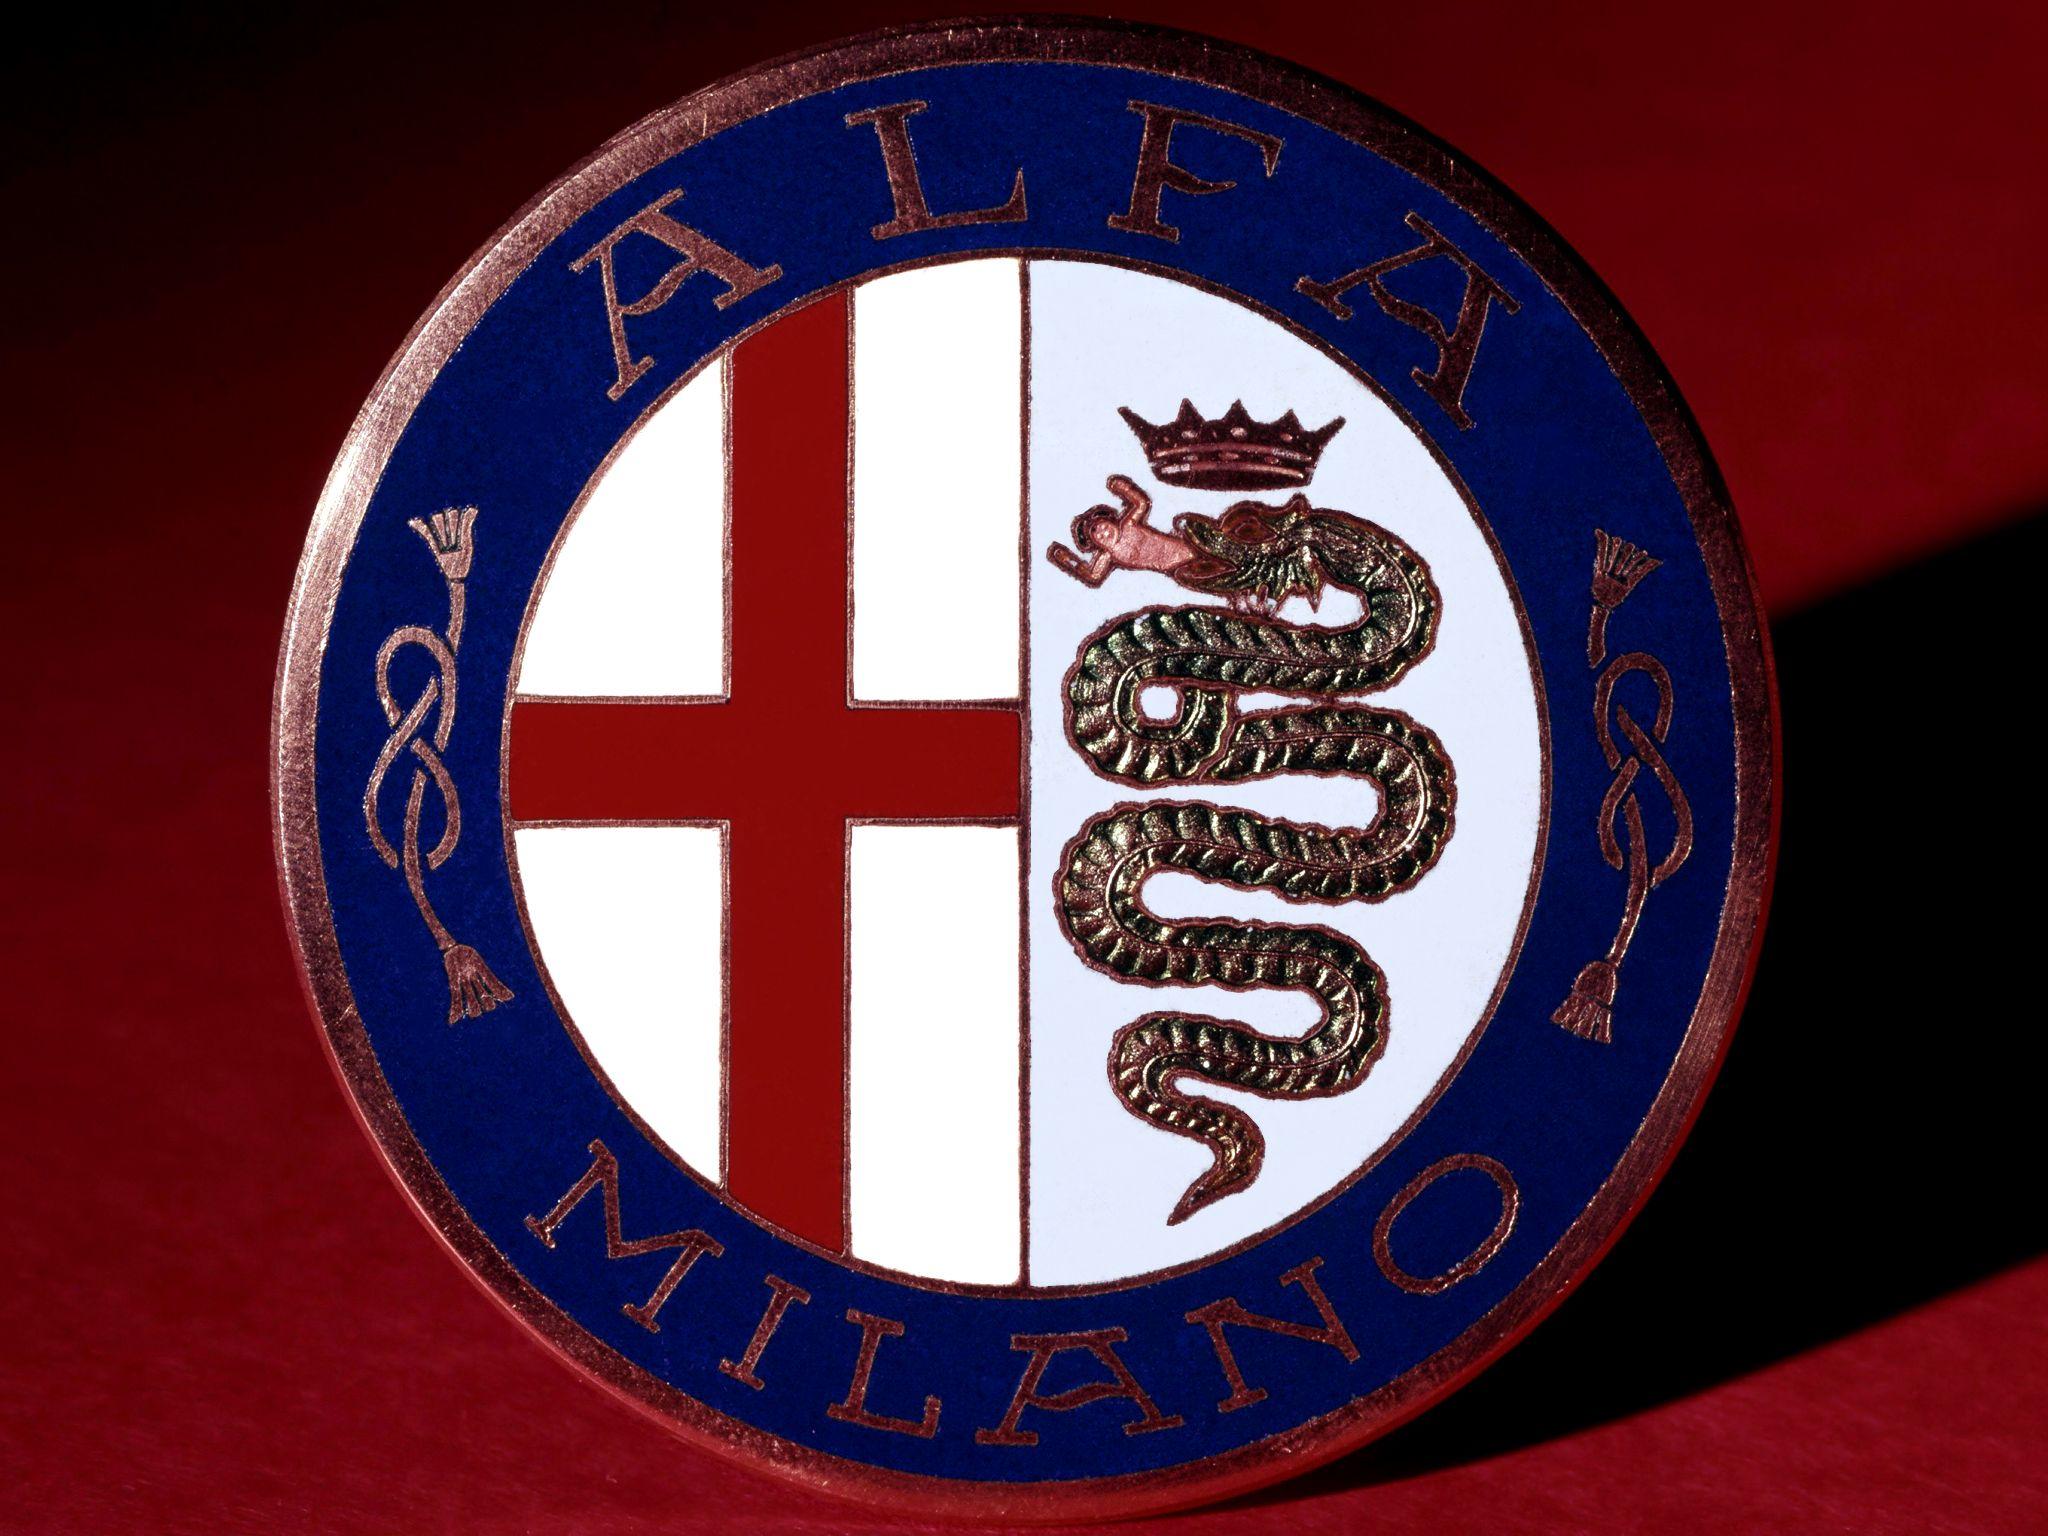 Blue and Red Cross Logo - Alfa Romeo Logo, Alfa Romeo Car Symbol Meaning | Car Brand Names.com